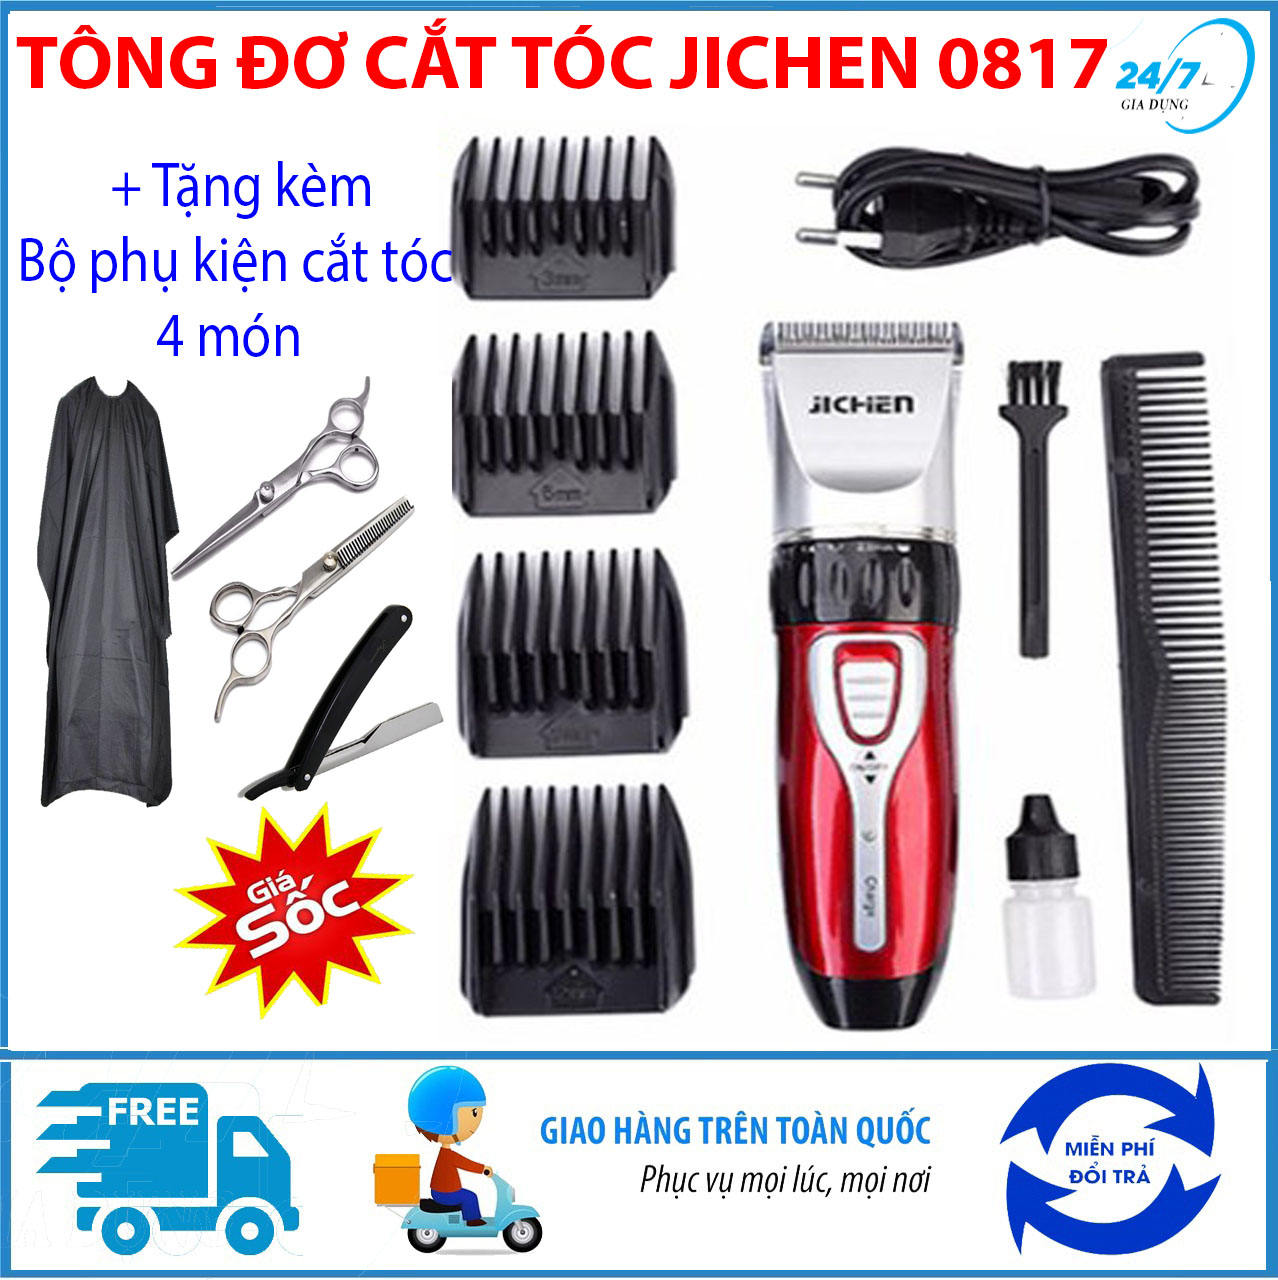 tang-bo-phu-kien-cat-toc-4-mon-tong-do-cat-toc-tre-em-jichen-0817-tong-do-cat-toc-chuyen-nghiepkhong-day-may-cat-toc-da-nang-tang-do-hot-toc-cho-be-an-toan-tien-loi-i1345007339-s5529914636.html-thumb2